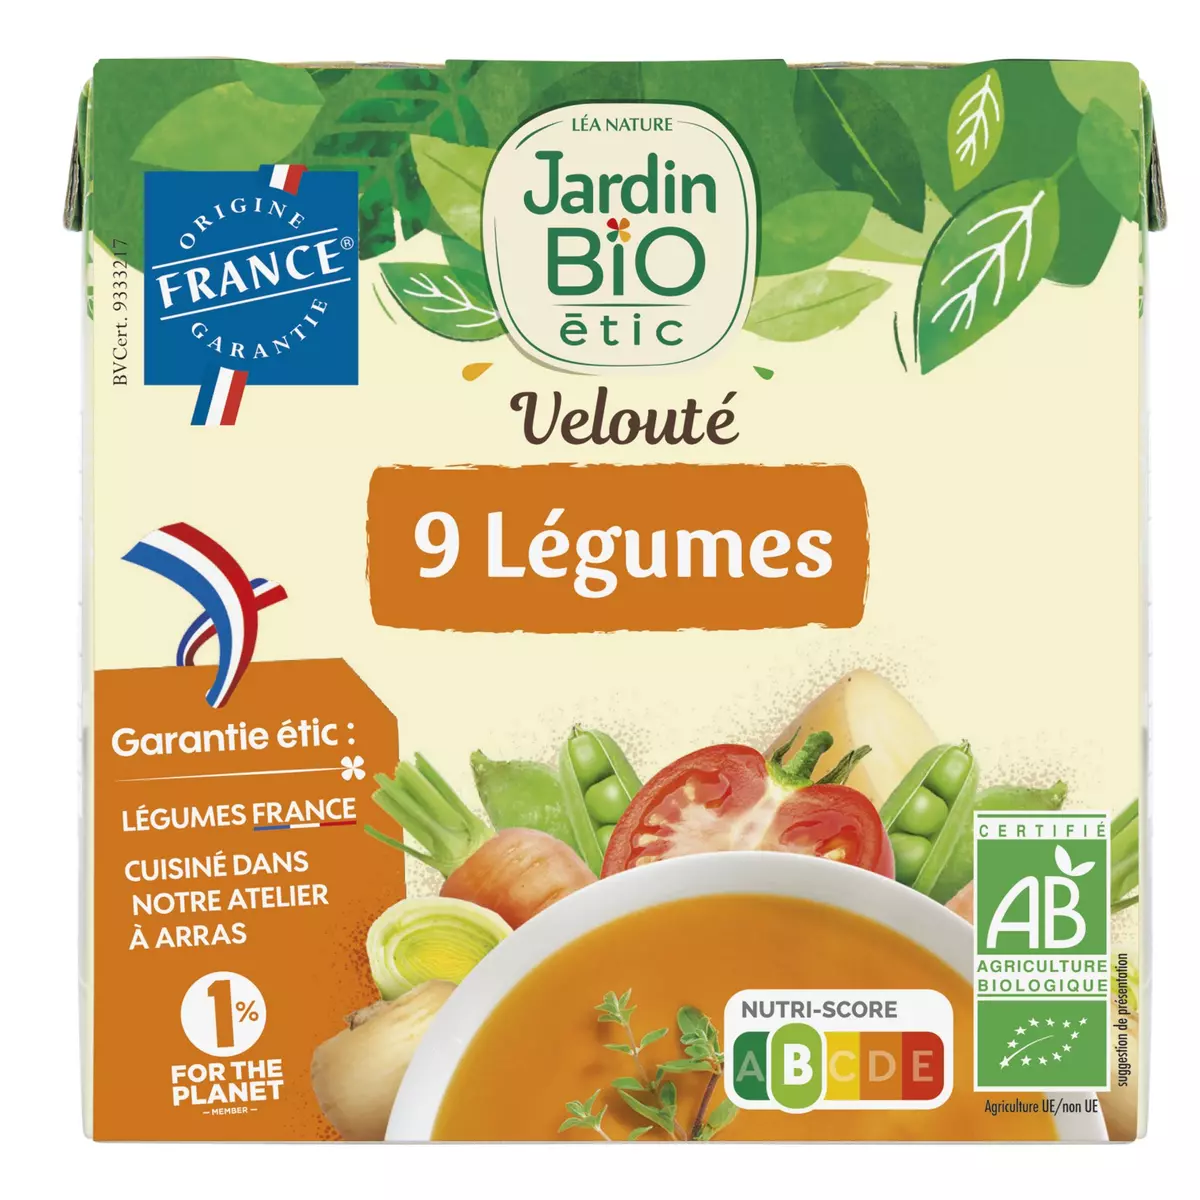 JARDIN BIO ETIC Soupe veloutée 9 légumes 2 briques 2x33cl